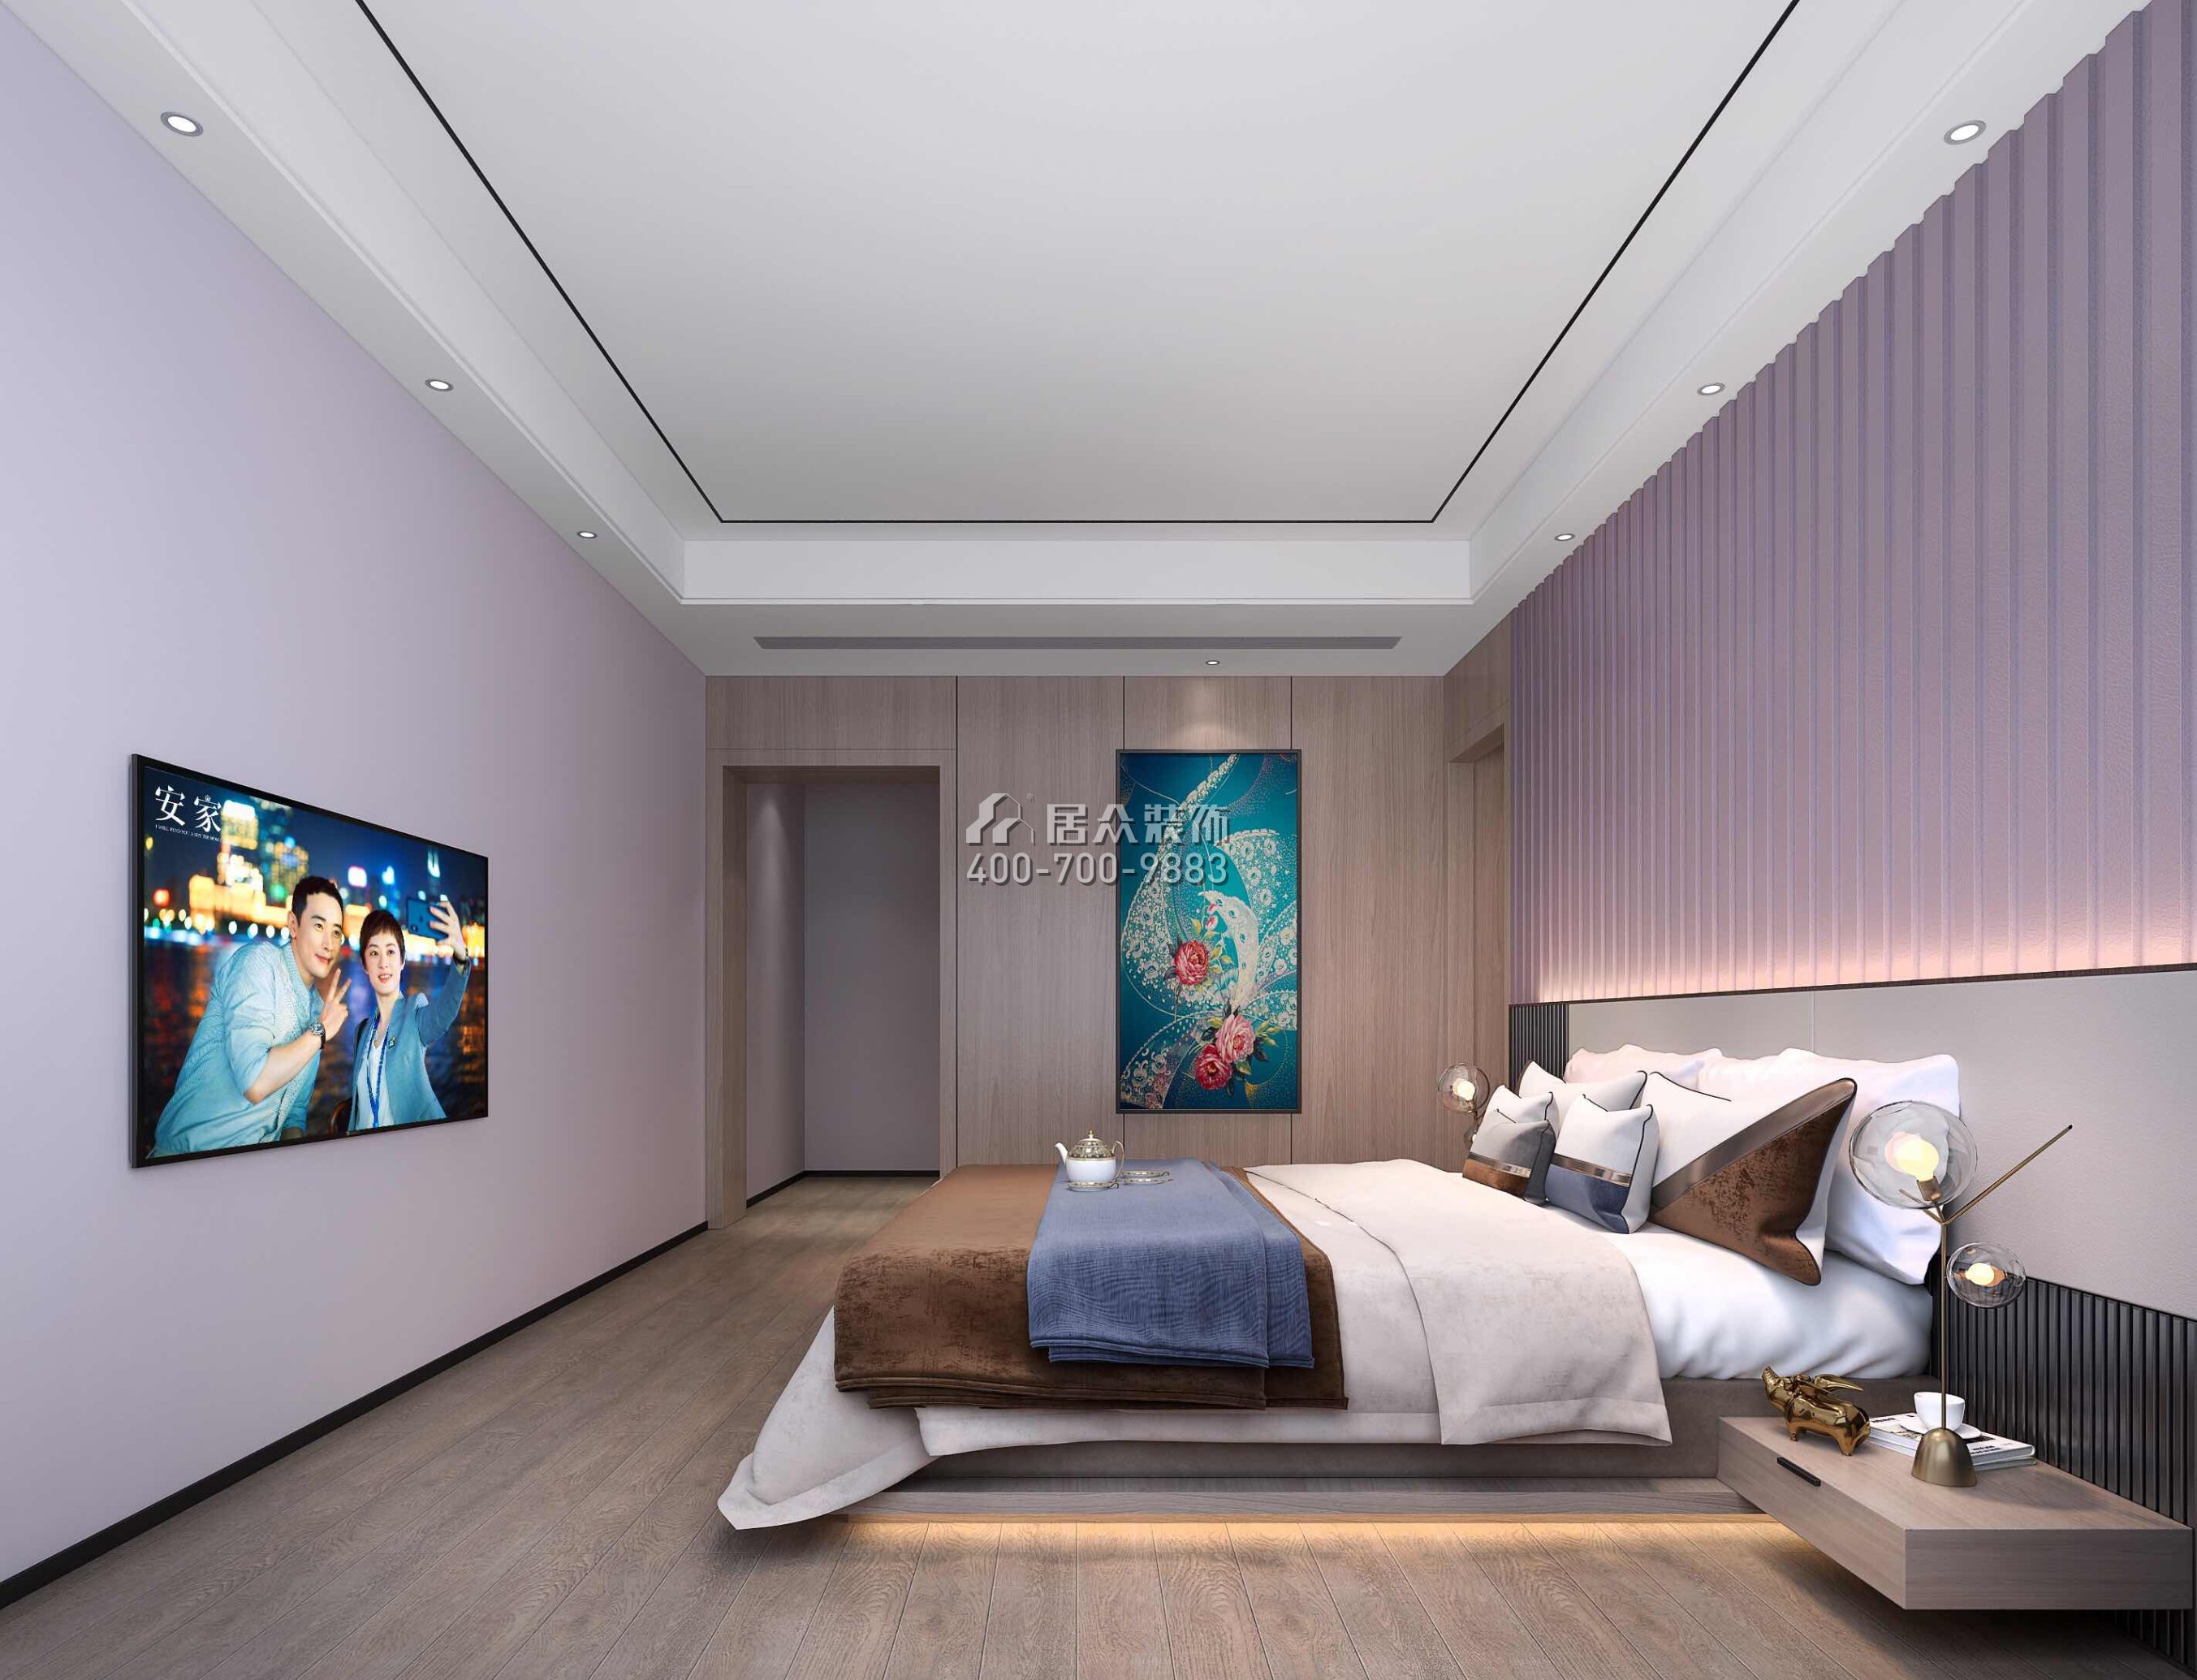 萬科皇馬酈宮241平方米現代簡約風格平層戶型臥室裝修效果圖